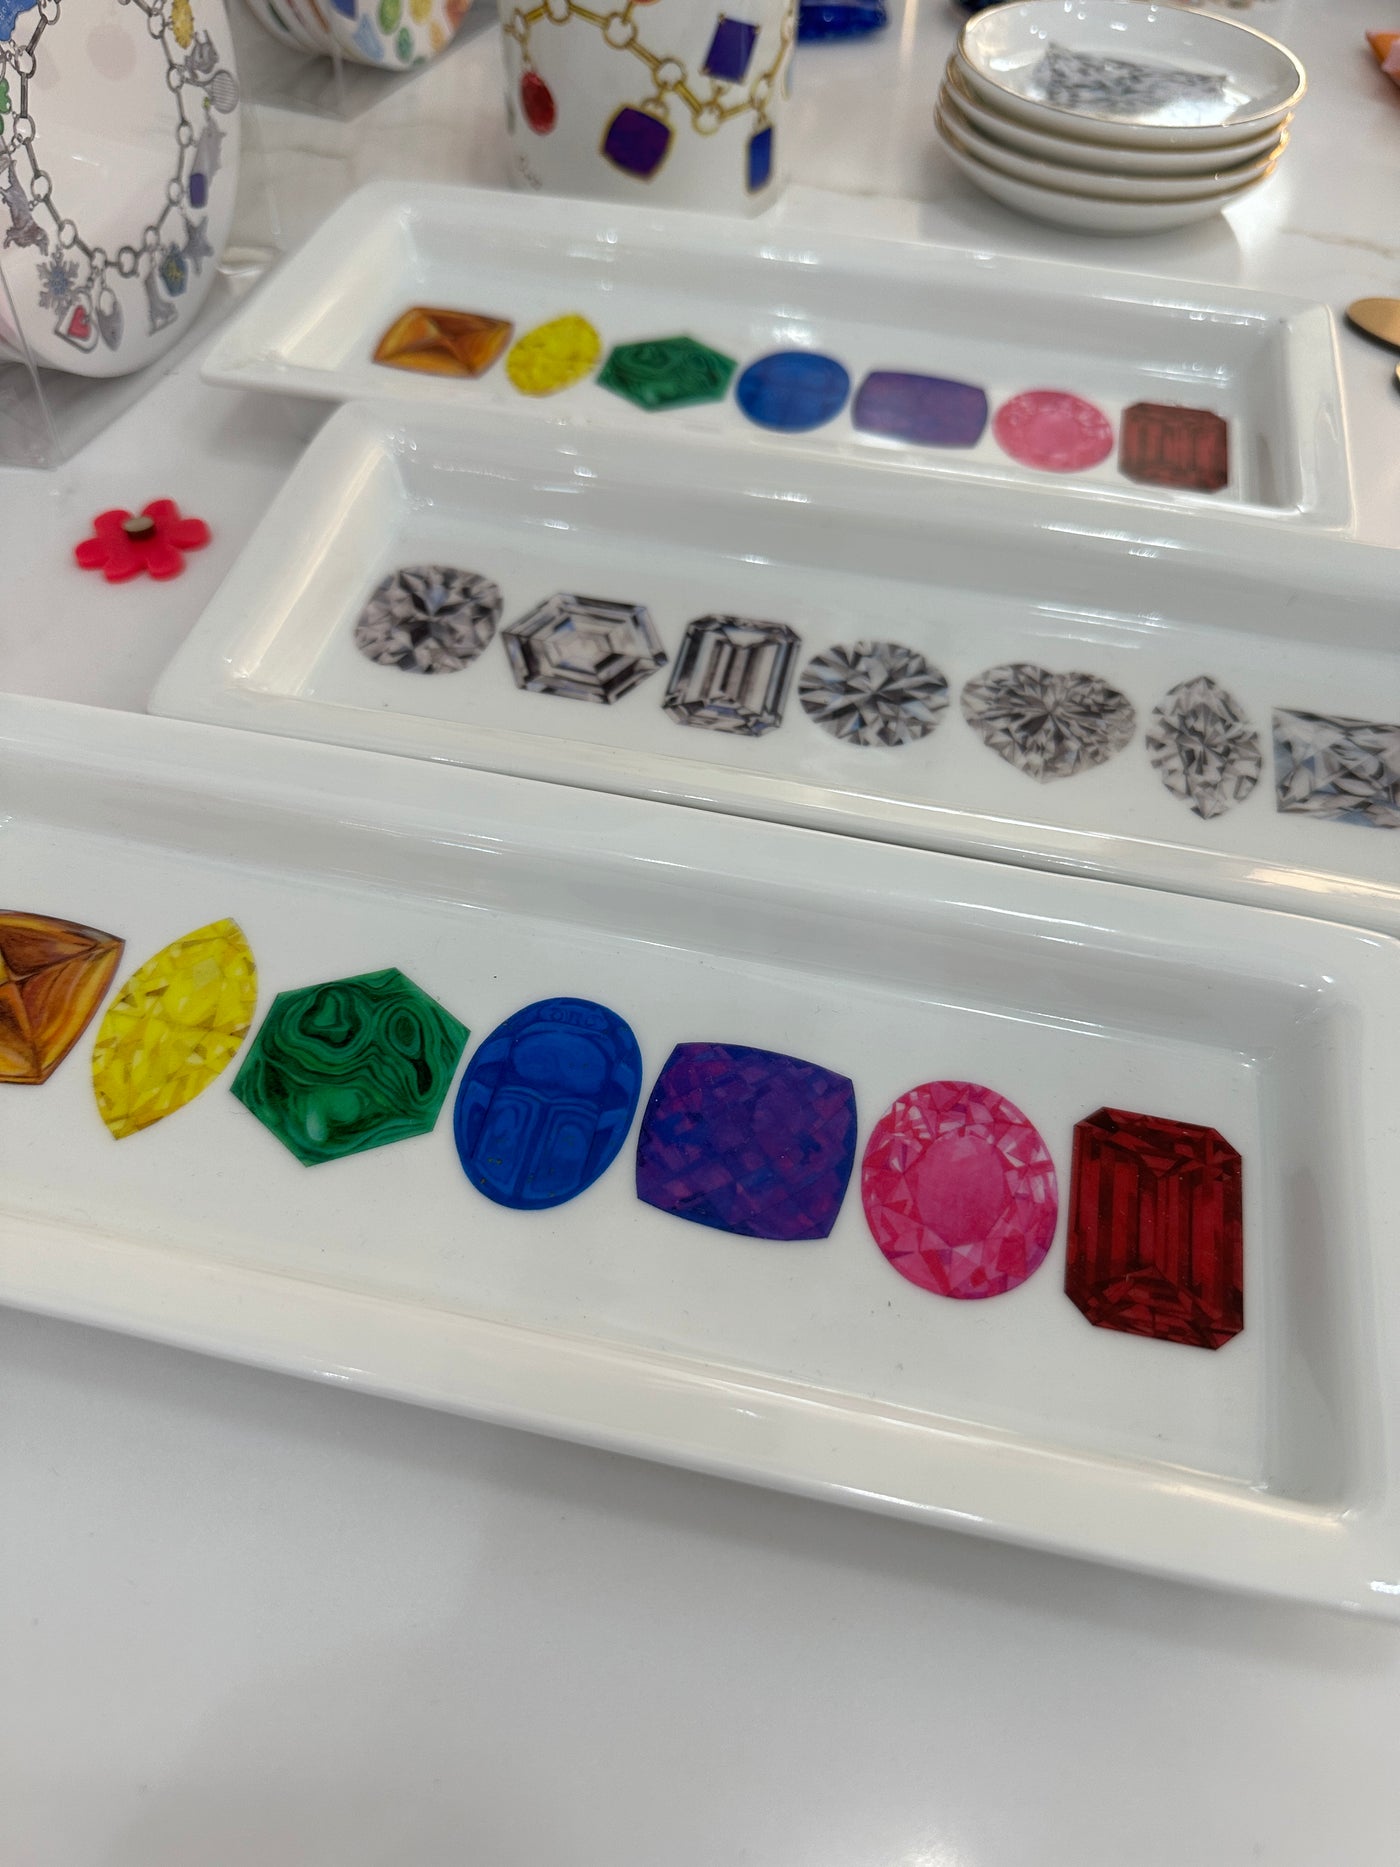 Diamond Porcelain Jewelry Tray